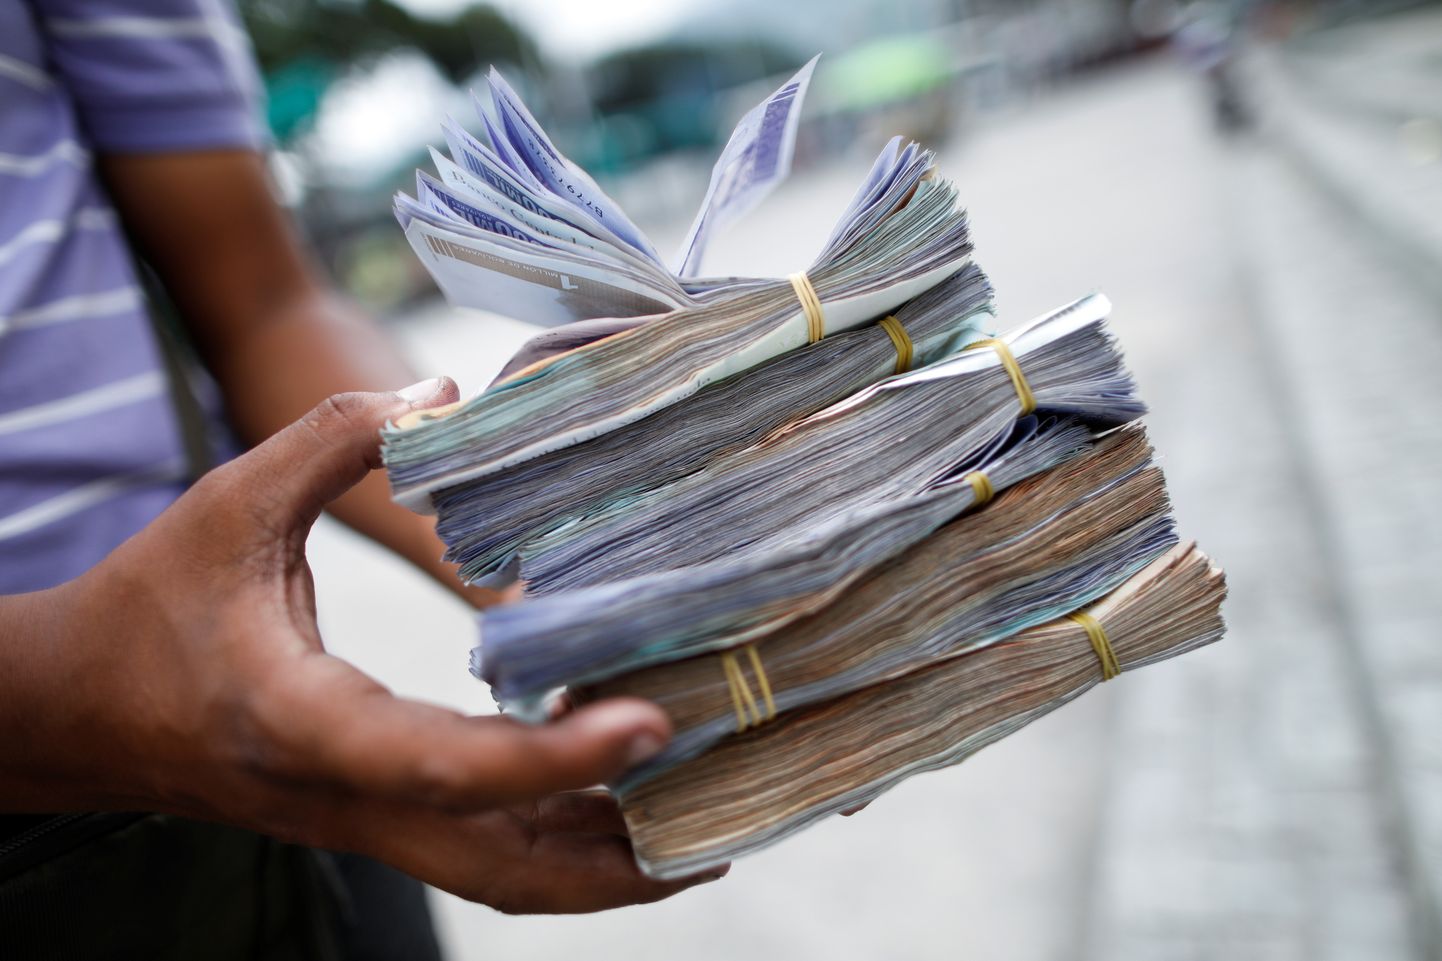 Venezuela bolivar ei maksa suurt midagi, mistõttu väikeste ostude jaoks on vaja kaasas kanda suuri rahapatakaid. Pildil olev raha oli augustis väärt 1-2,5 USA senti, tänapäeval pole see enam niigi palju väärt.